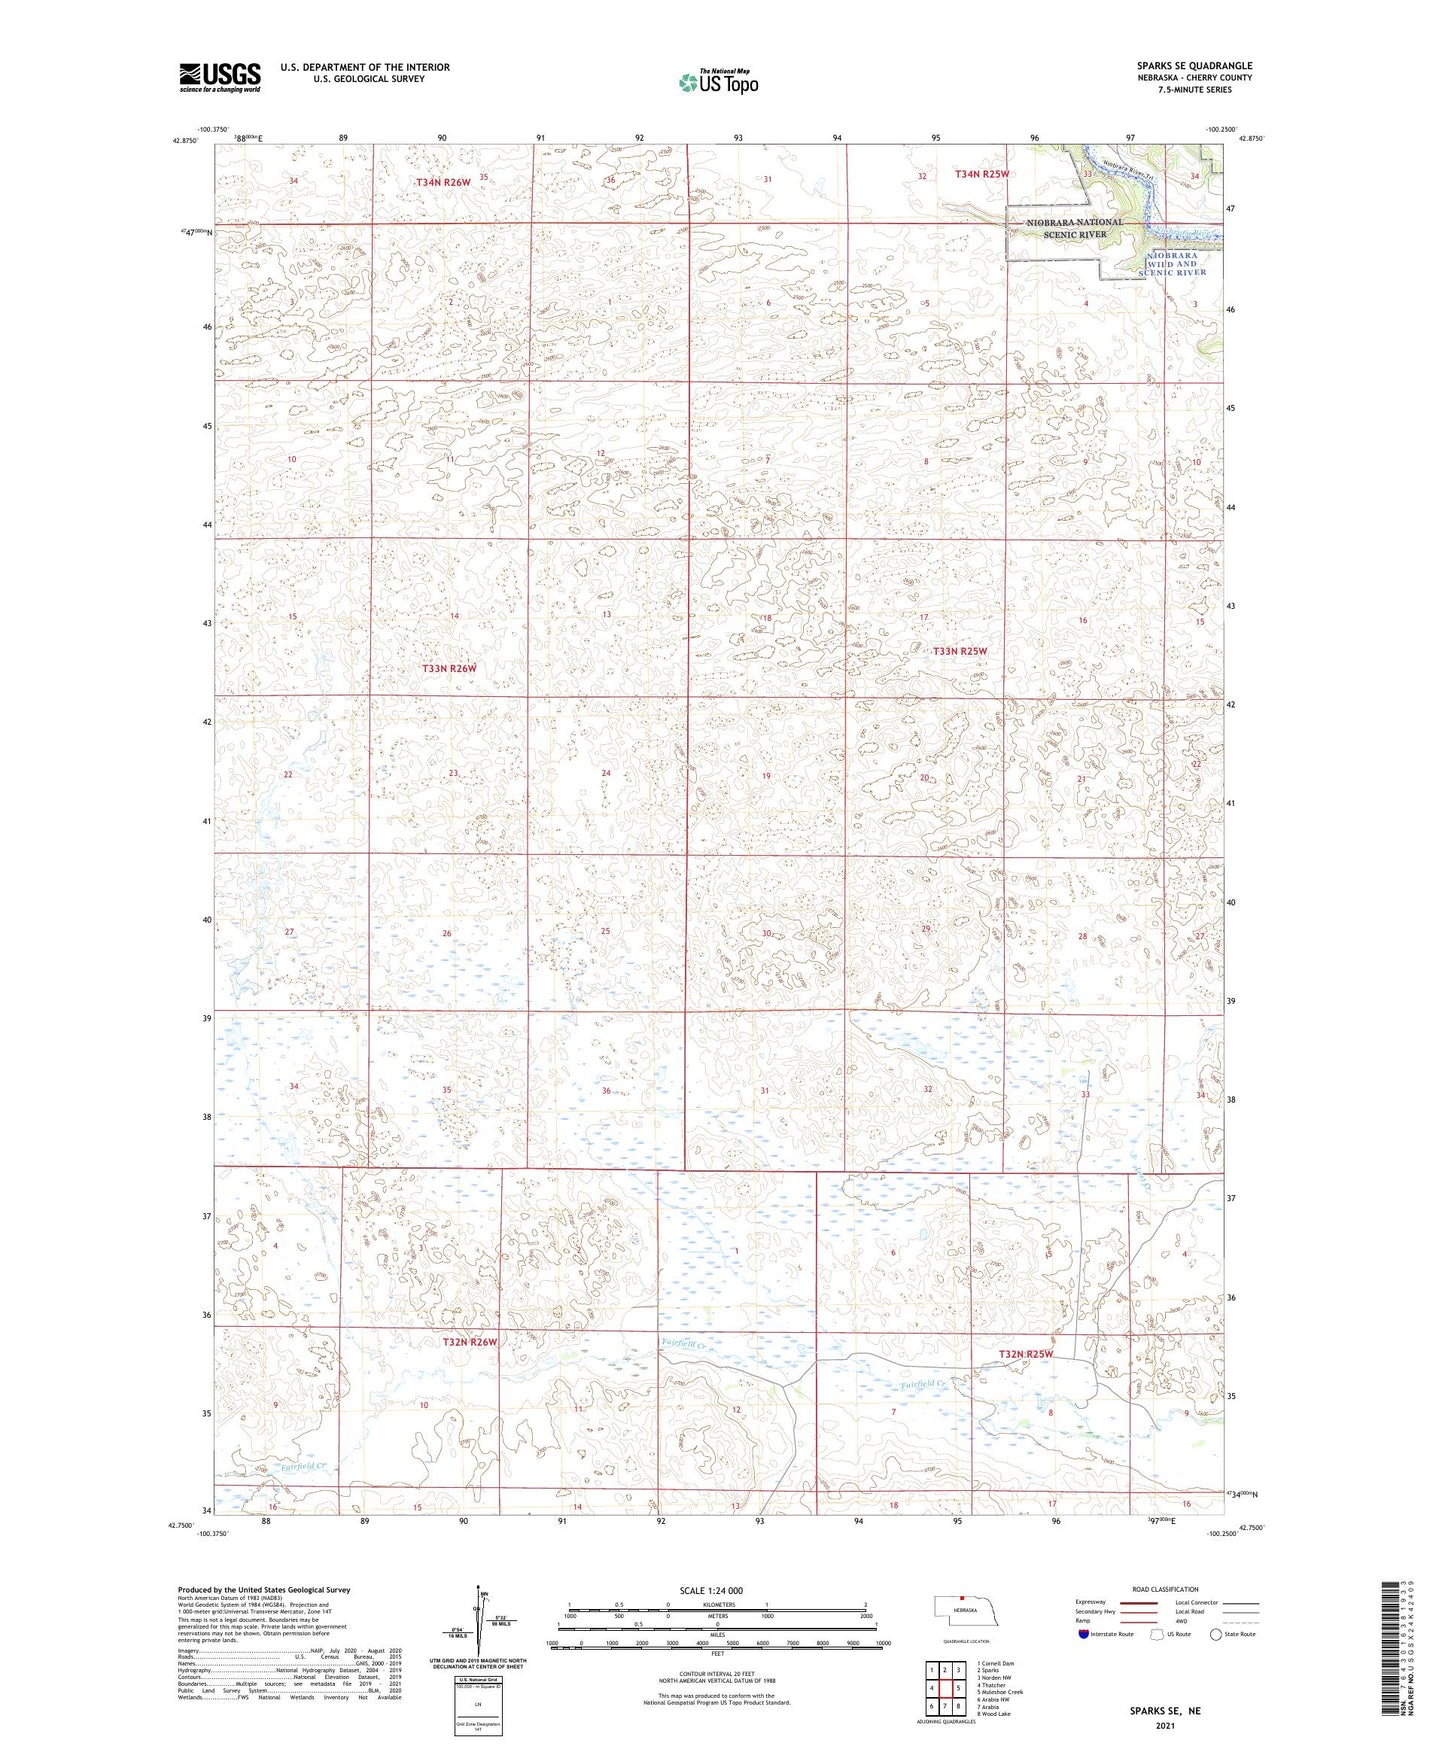 Sparks SE Nebraska US Topo Map Image